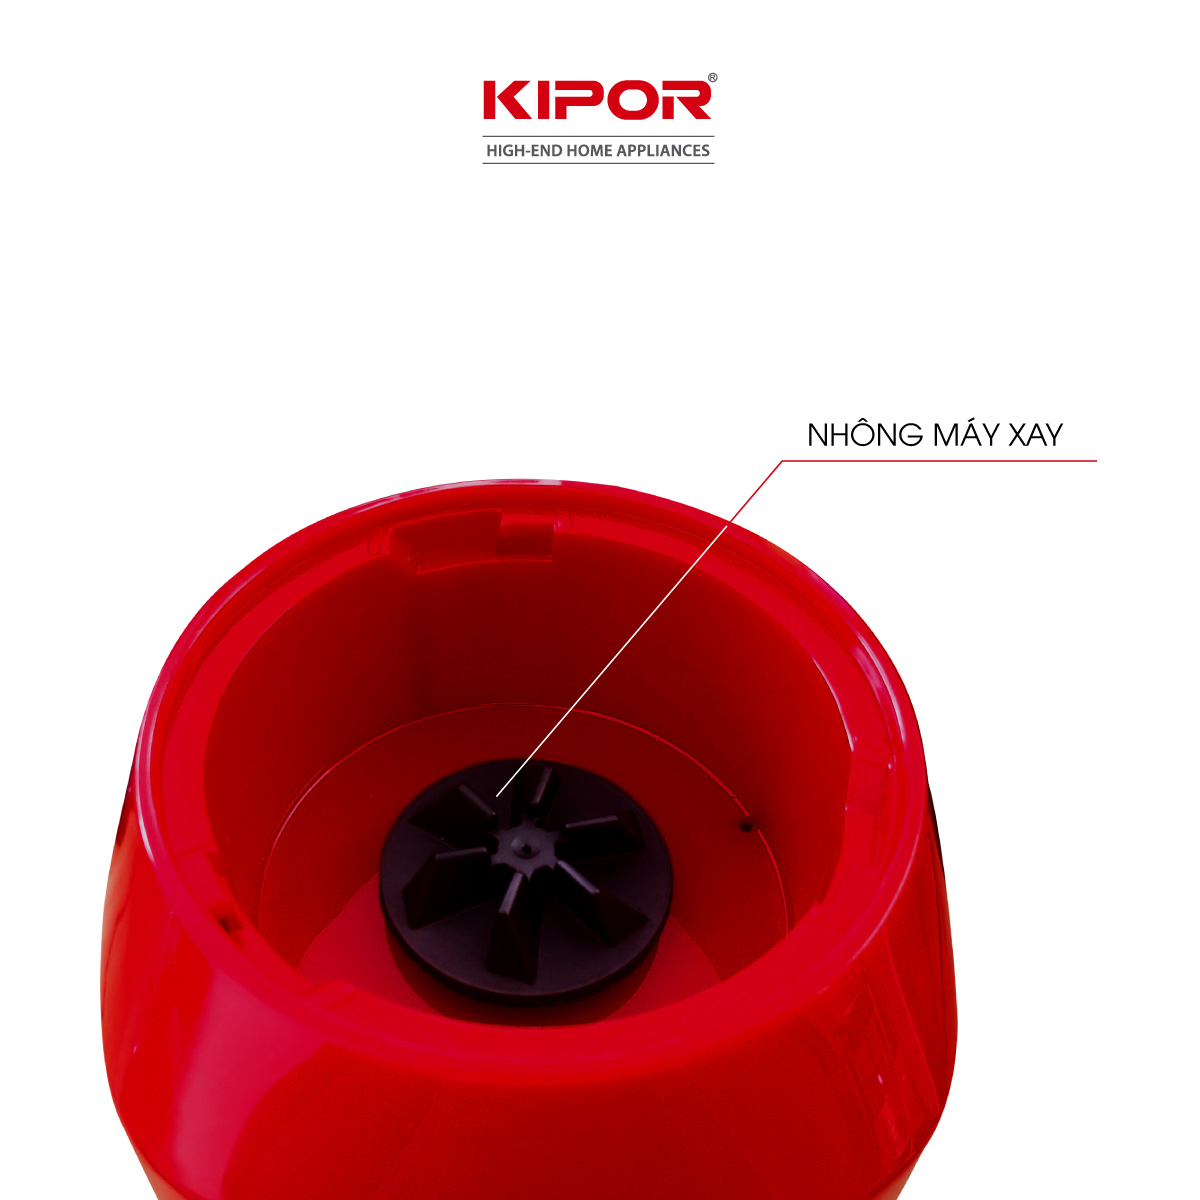 Máy xay sinh tố KIPOR KP-S306 - Lưỡi thép chống ăn mòn siêu bền - Tặng kèm 3 cối 0,2L, 0,5L, 1,5L - Tự ngắt chống quá tải - Hàng chính hãng